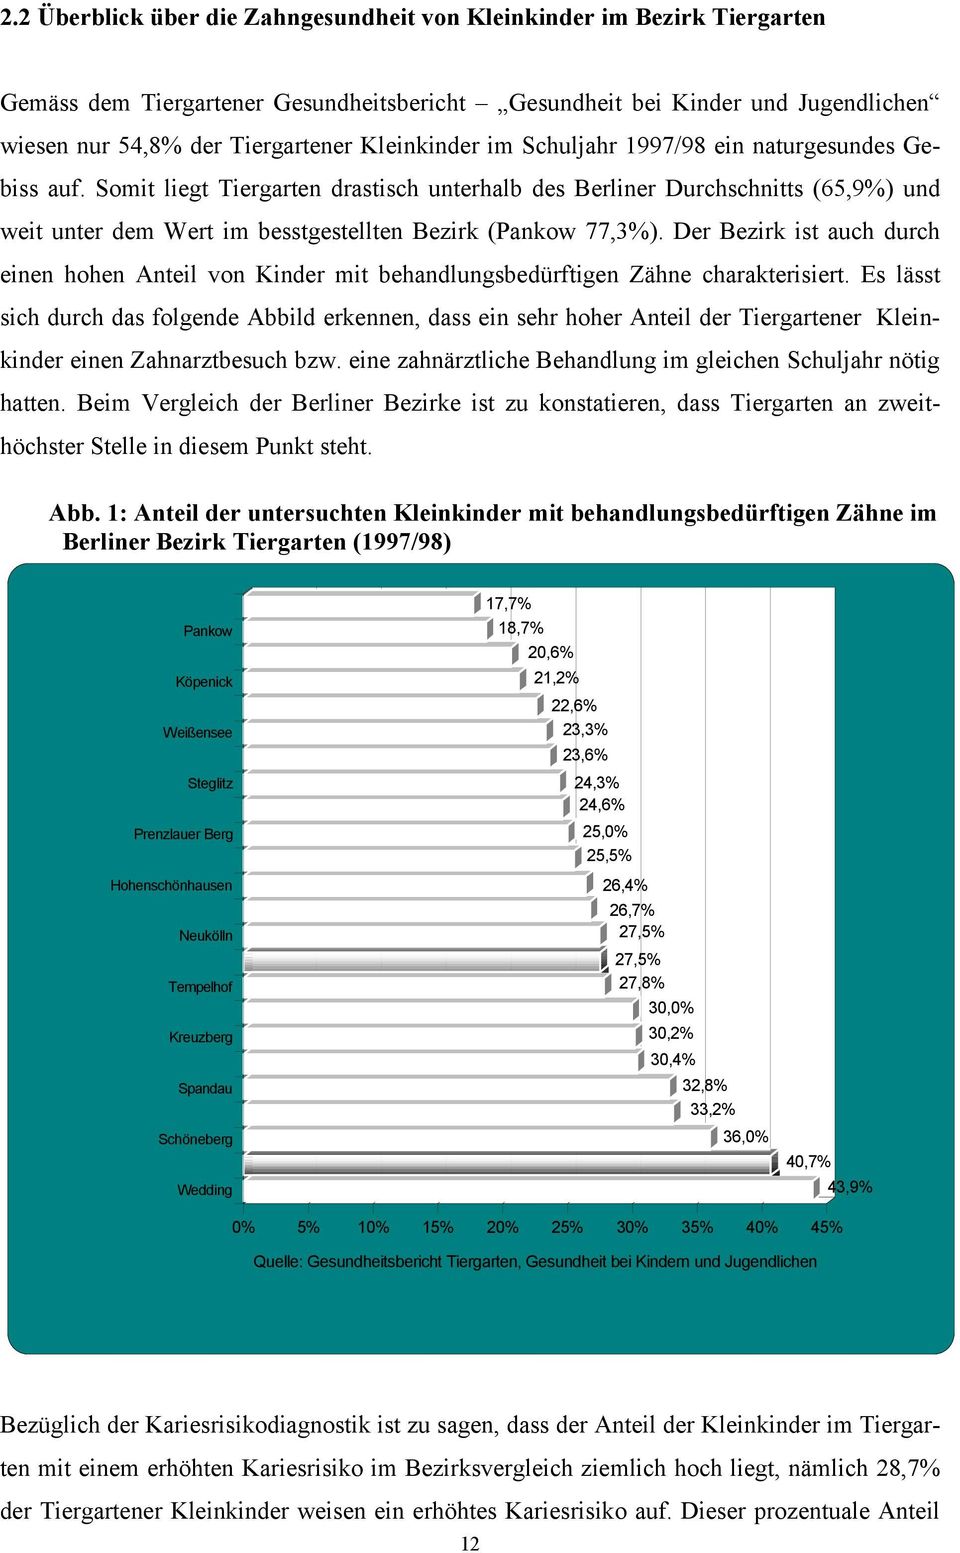 Somit liegt Tiergarten drastisch unterhalb des Berliner Durchschnitts (65,9%) und weit unter dem Wert im besstgestellten Bezirk (Pankow 77,3%).